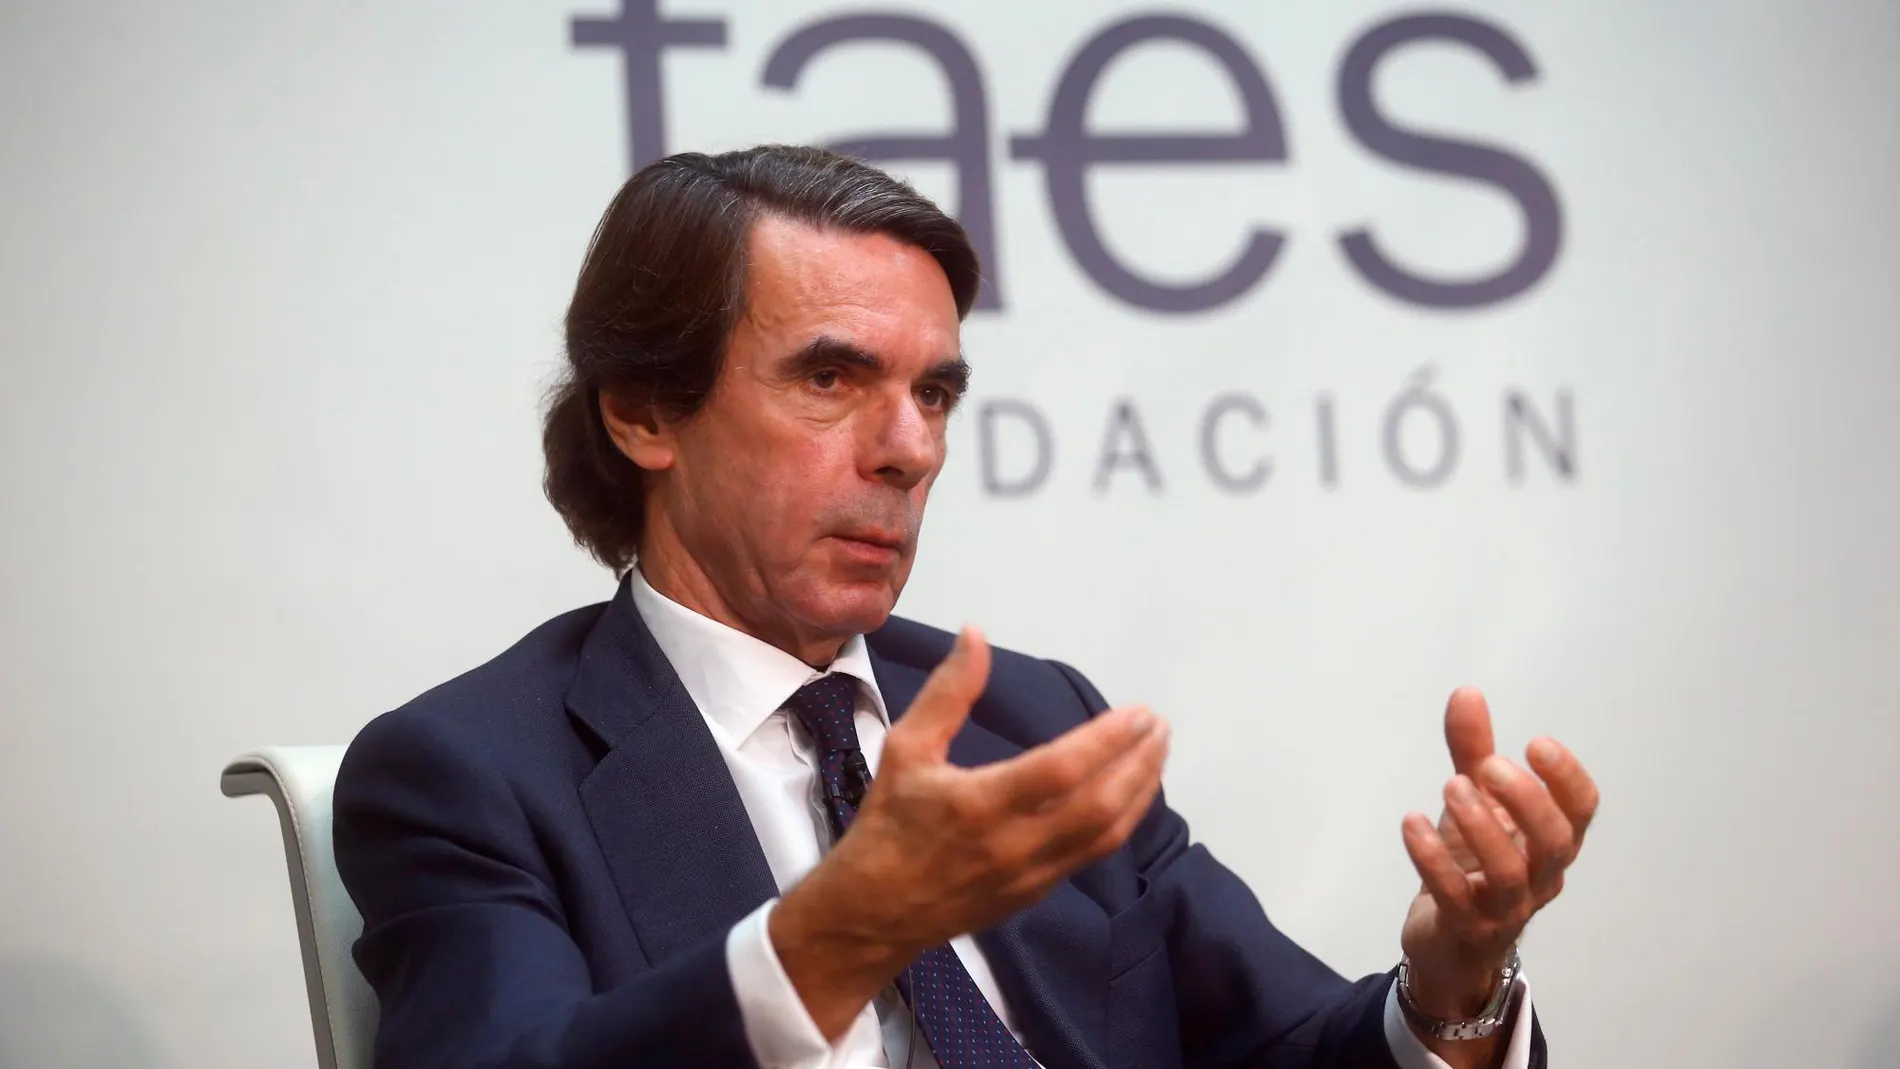 José María Aznar en la presentación del informe de la Fundación "La Alianza Atlántica 70 años después: de la reforma a la refundación"/Foto: Efe